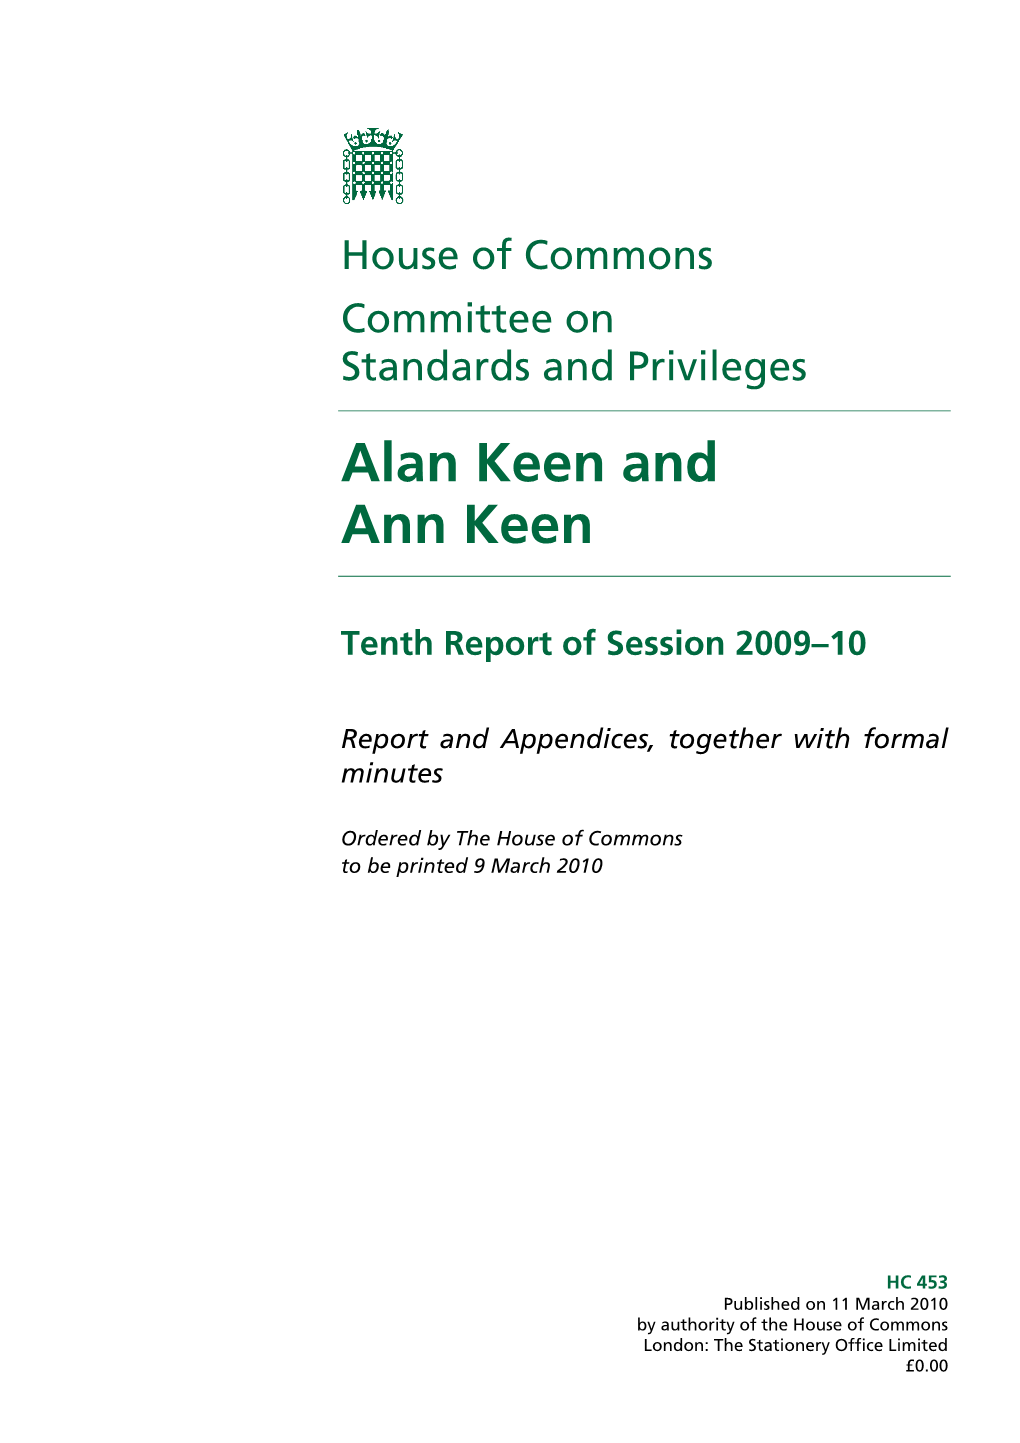 Alan Keen and Ann Keen